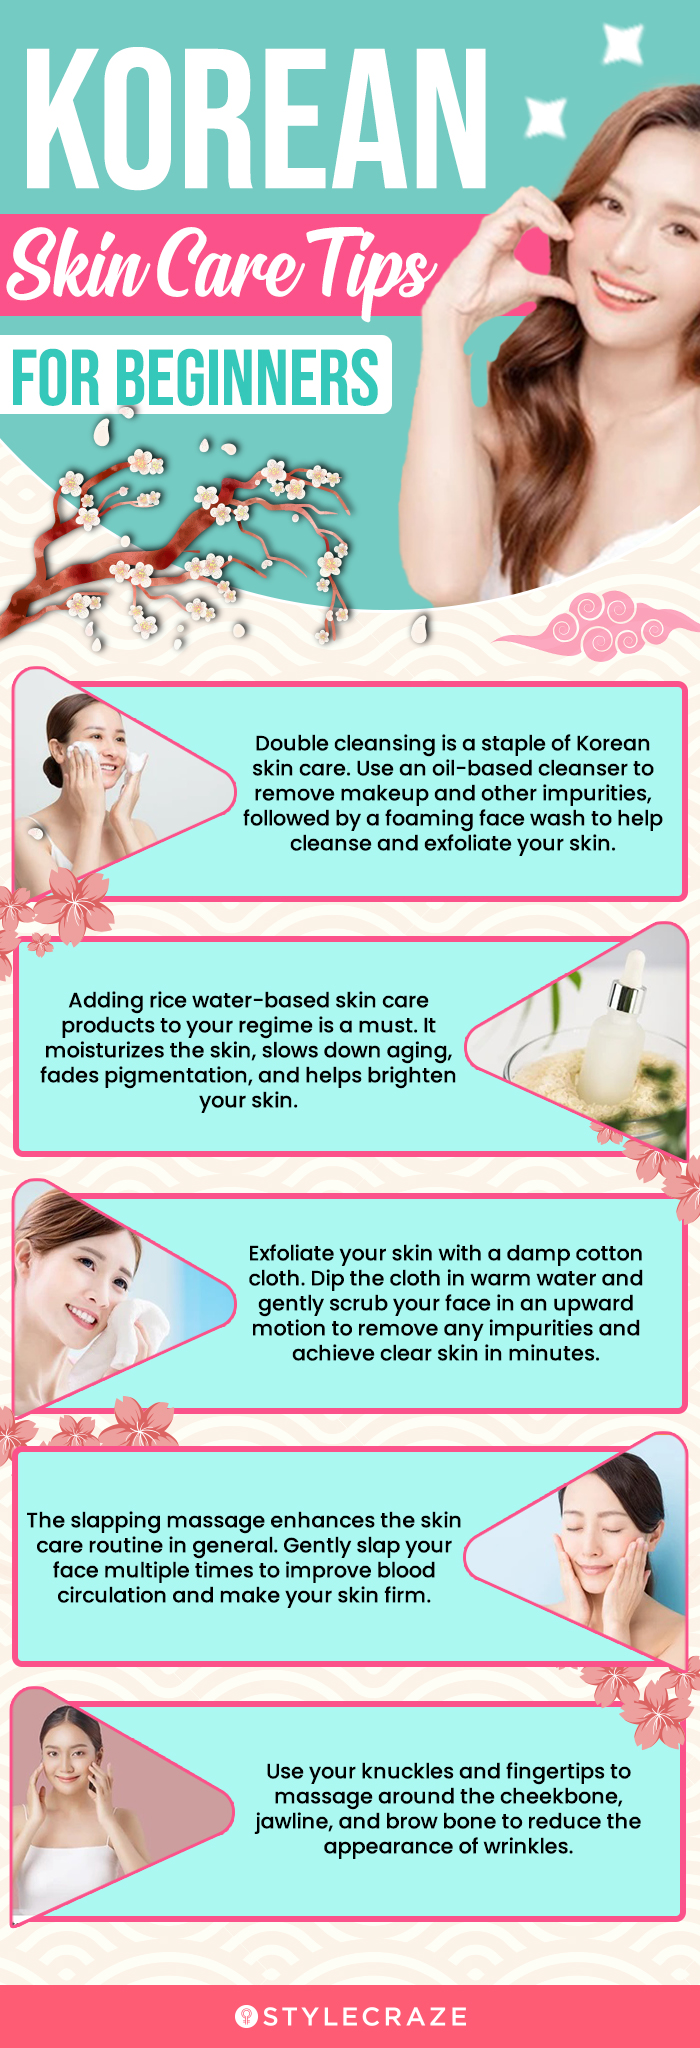 Korean Skin Care Tips For Beginners (infographic)